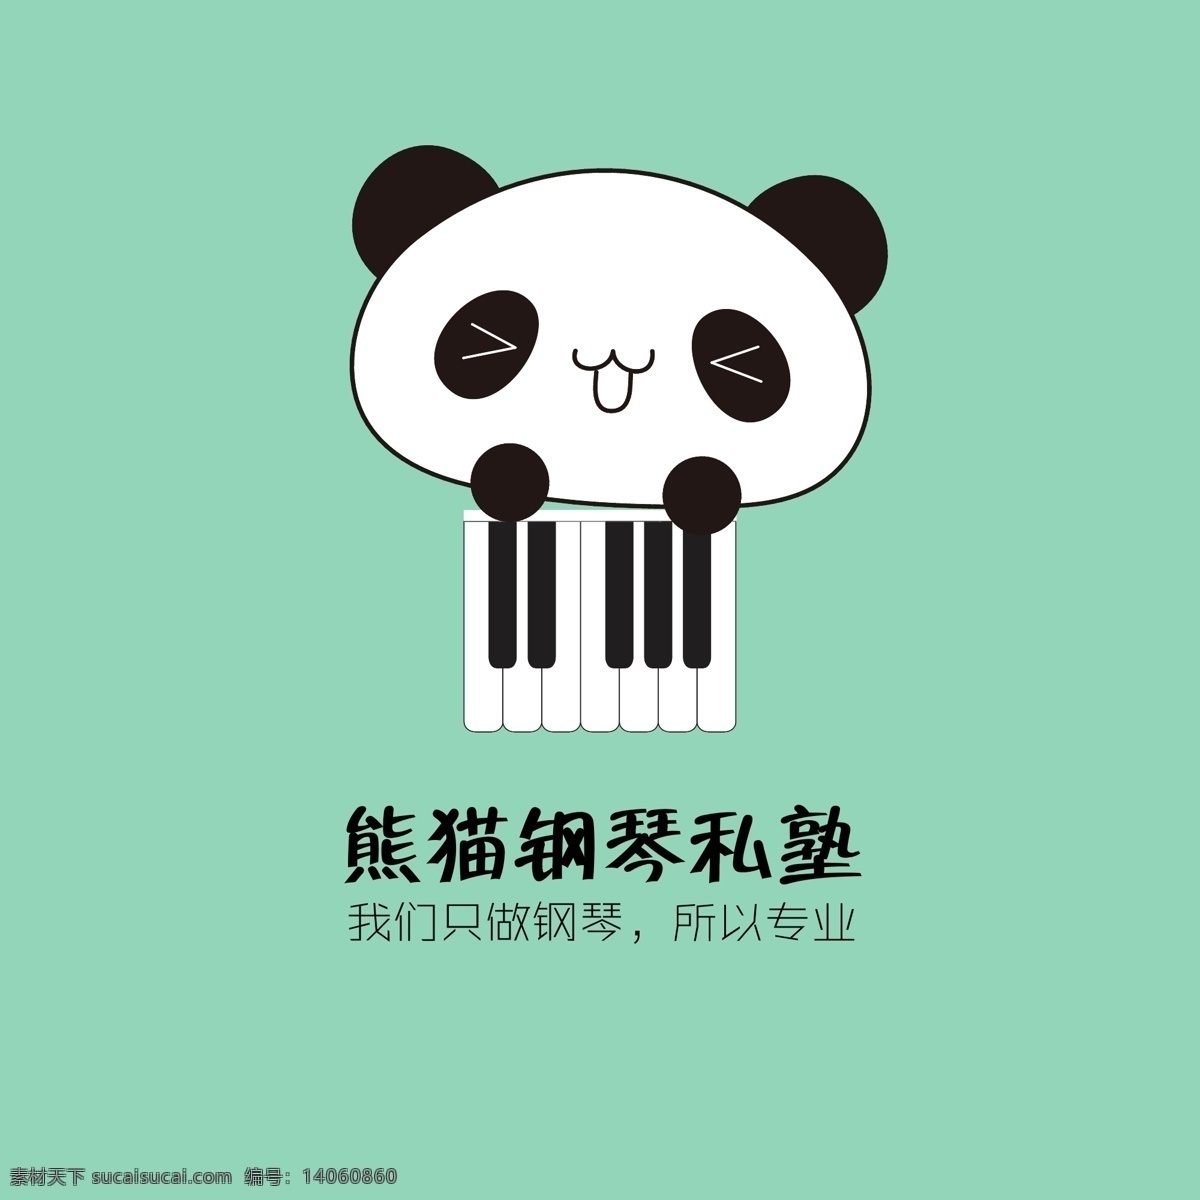 熊猫 钢琴 私塾 logoai 格式 色 简约 形象 logo 多色可选